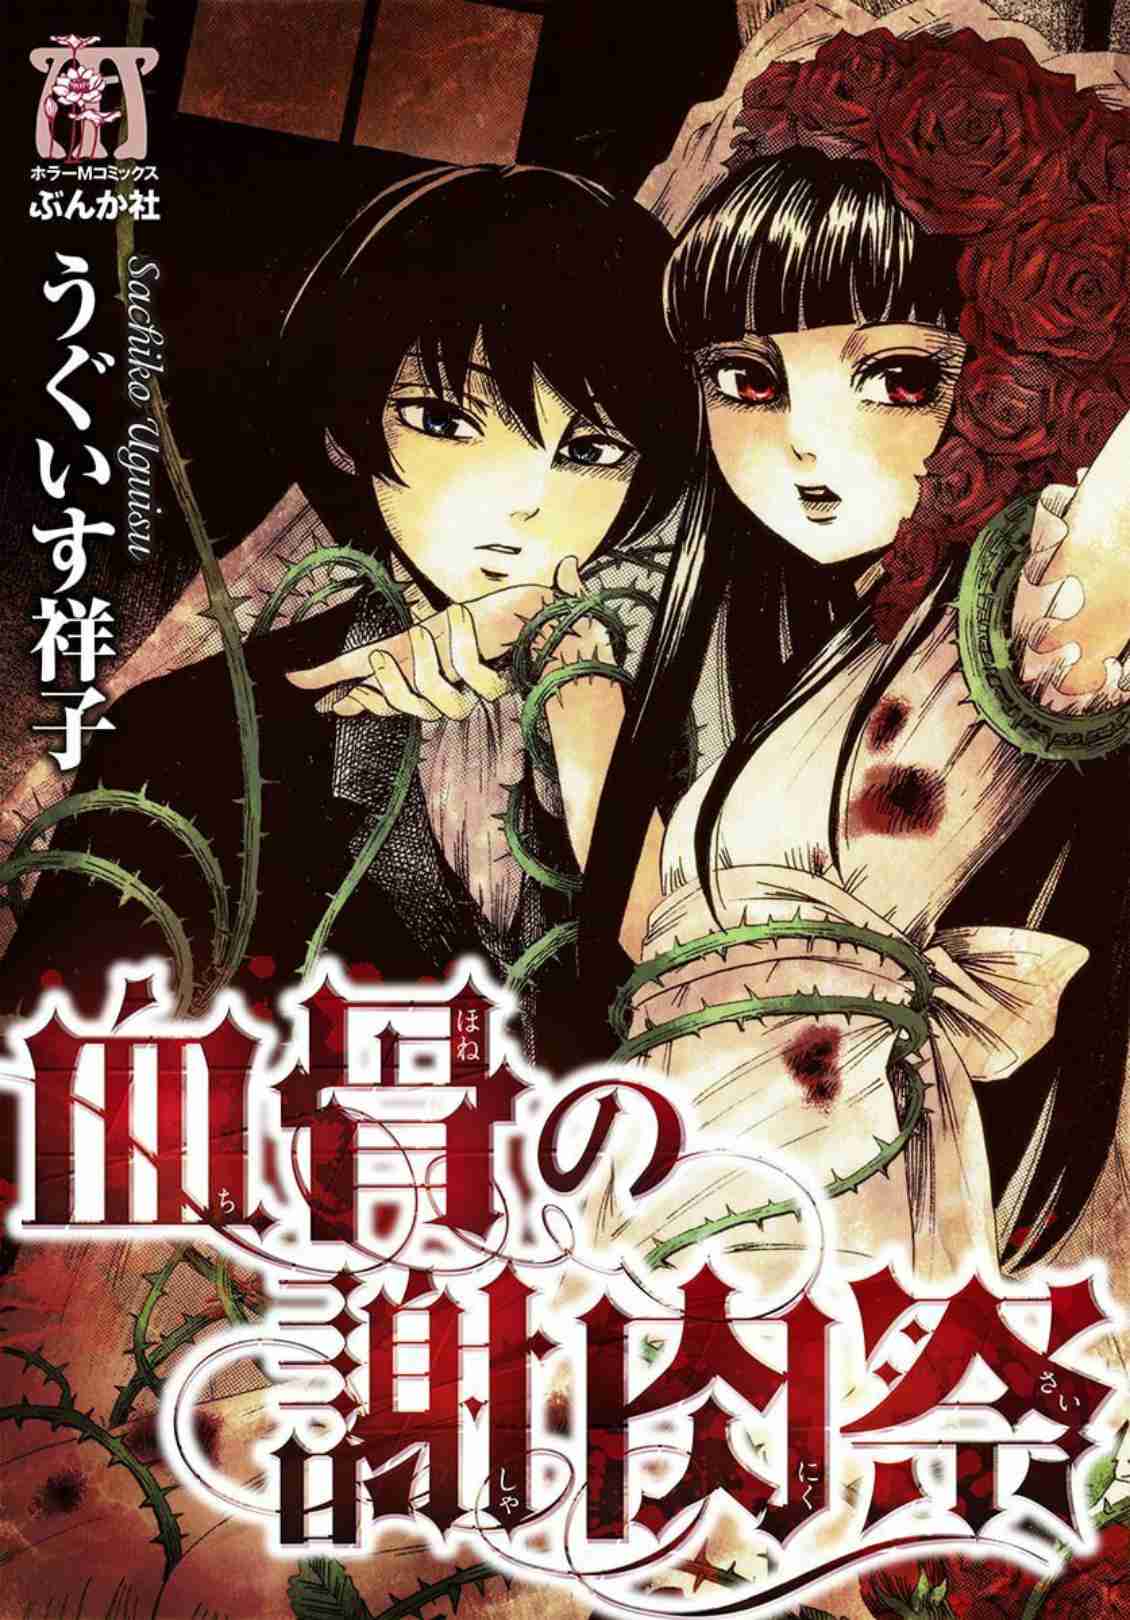 Chihone no Shanikusai Vol. 1 Ch. 1 Carnival of Blood and Bone